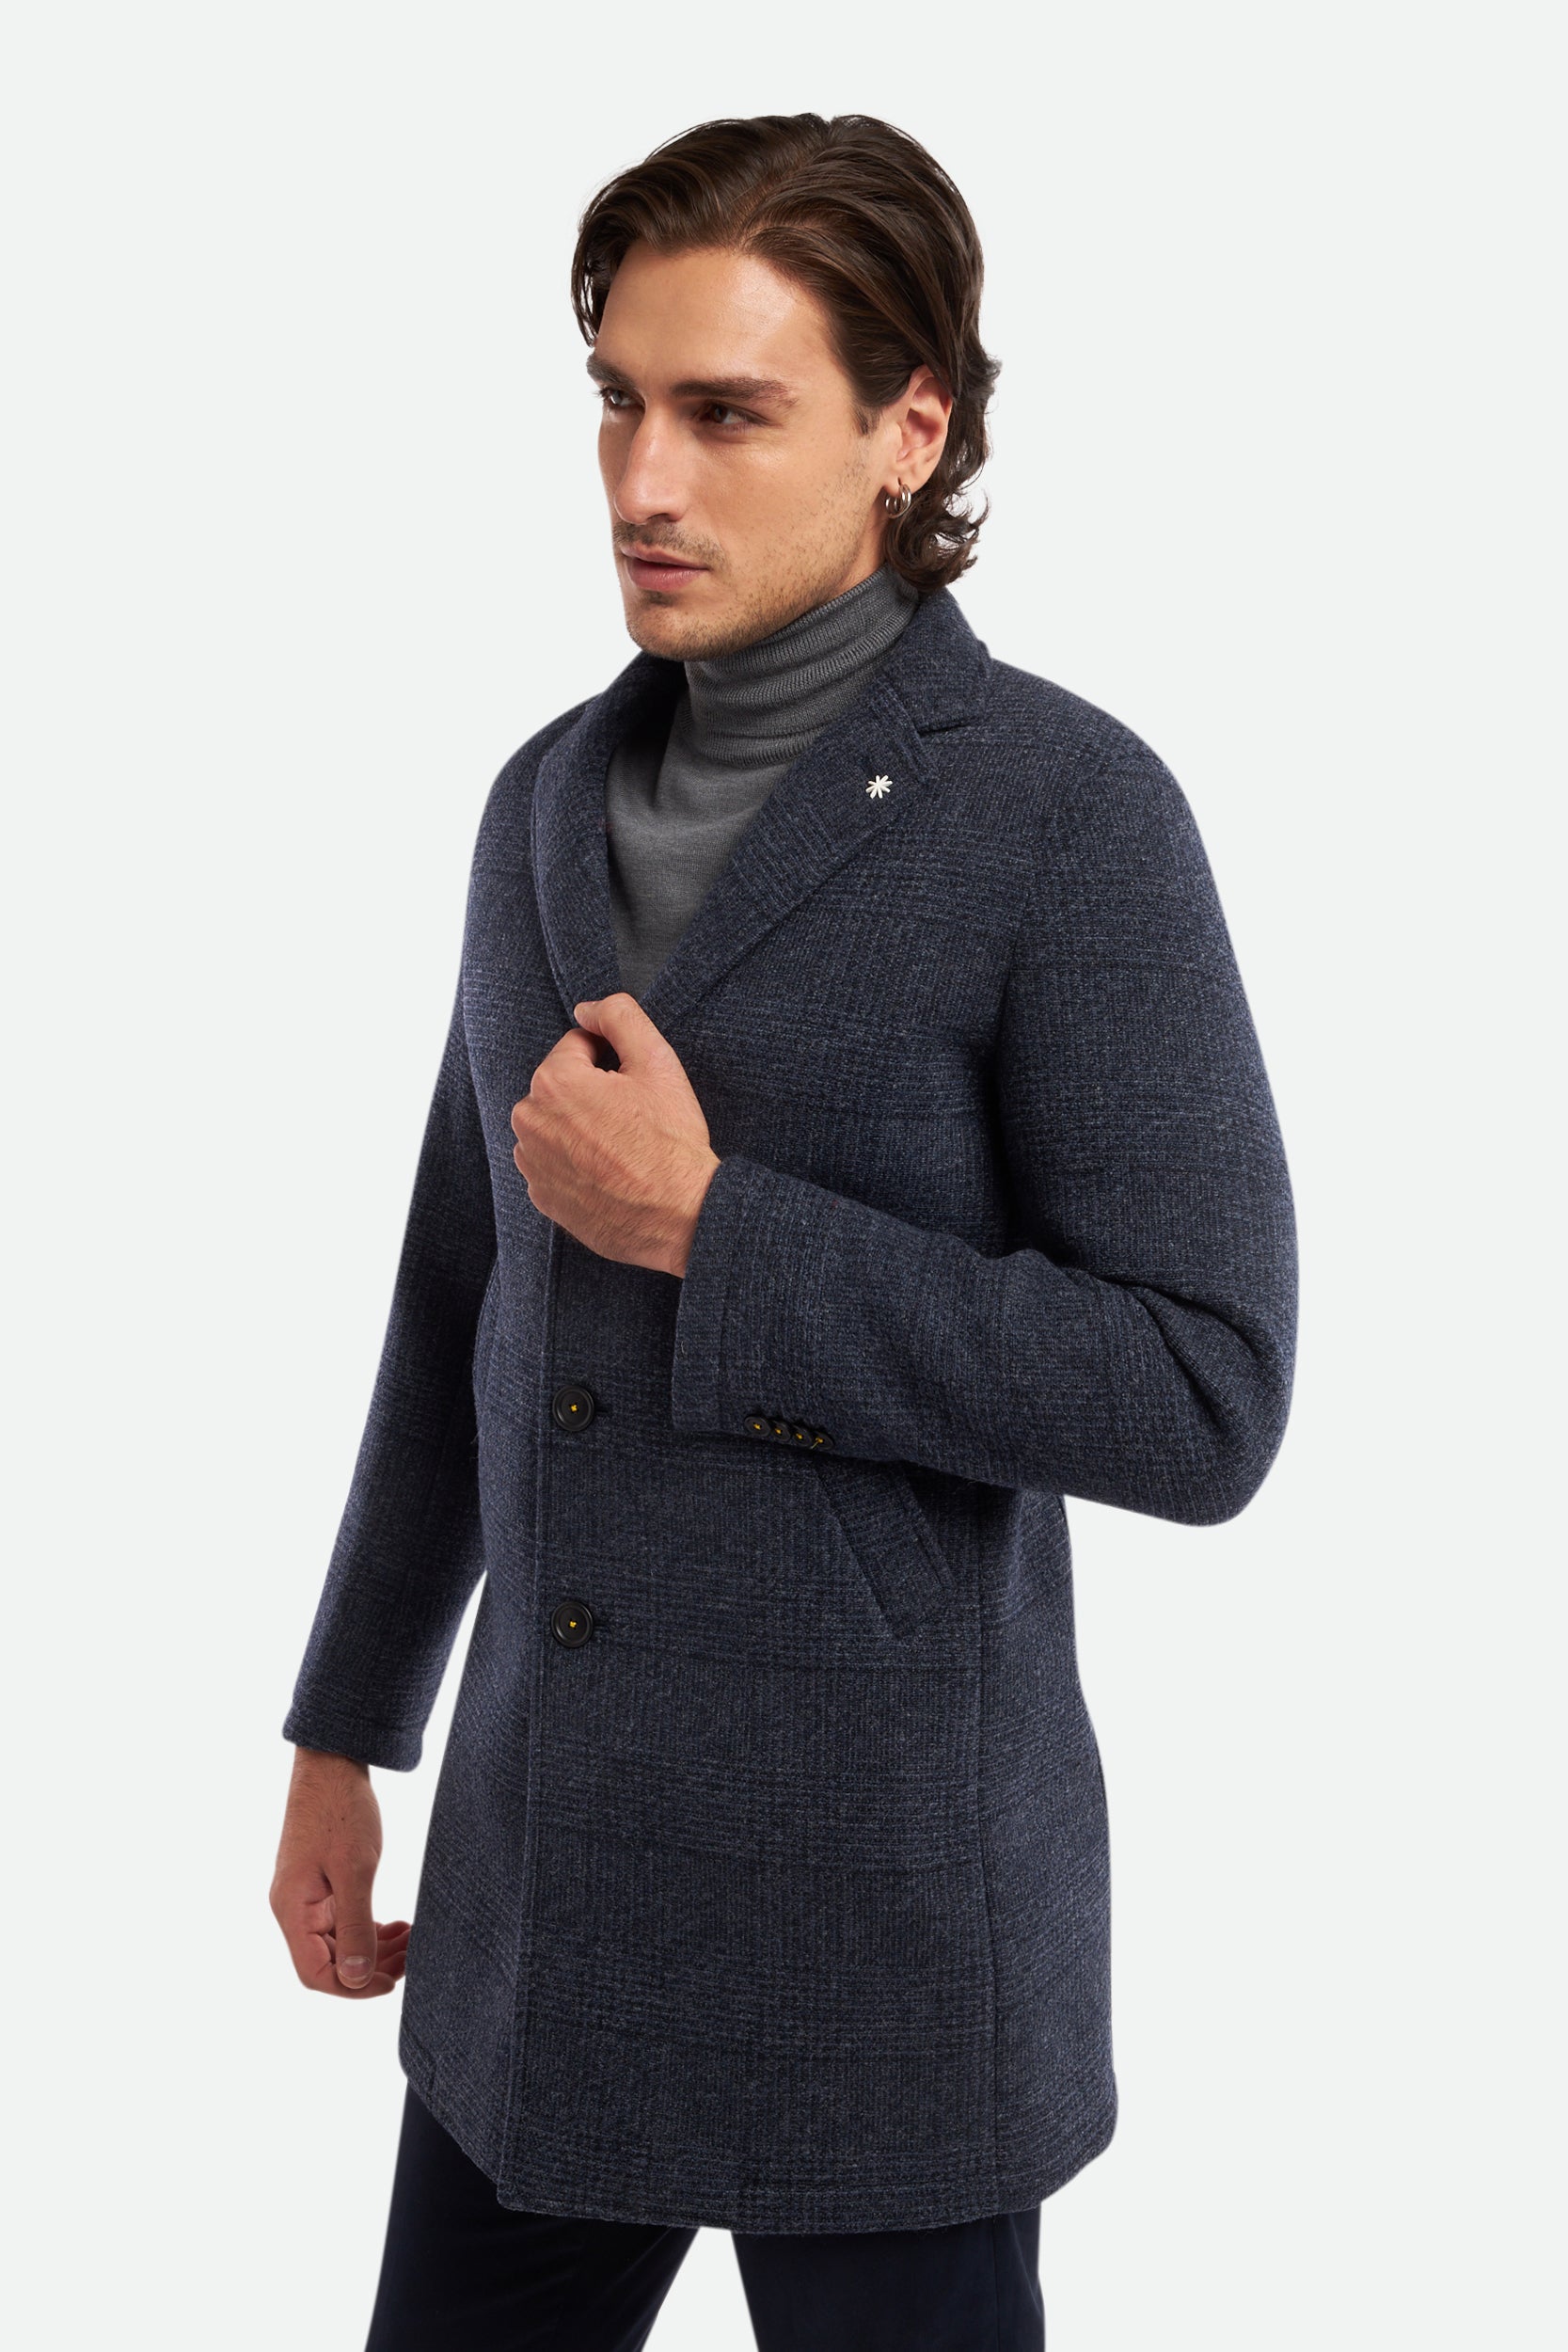 Blauer Mantel aus Wollmischung von Manuel Ritz